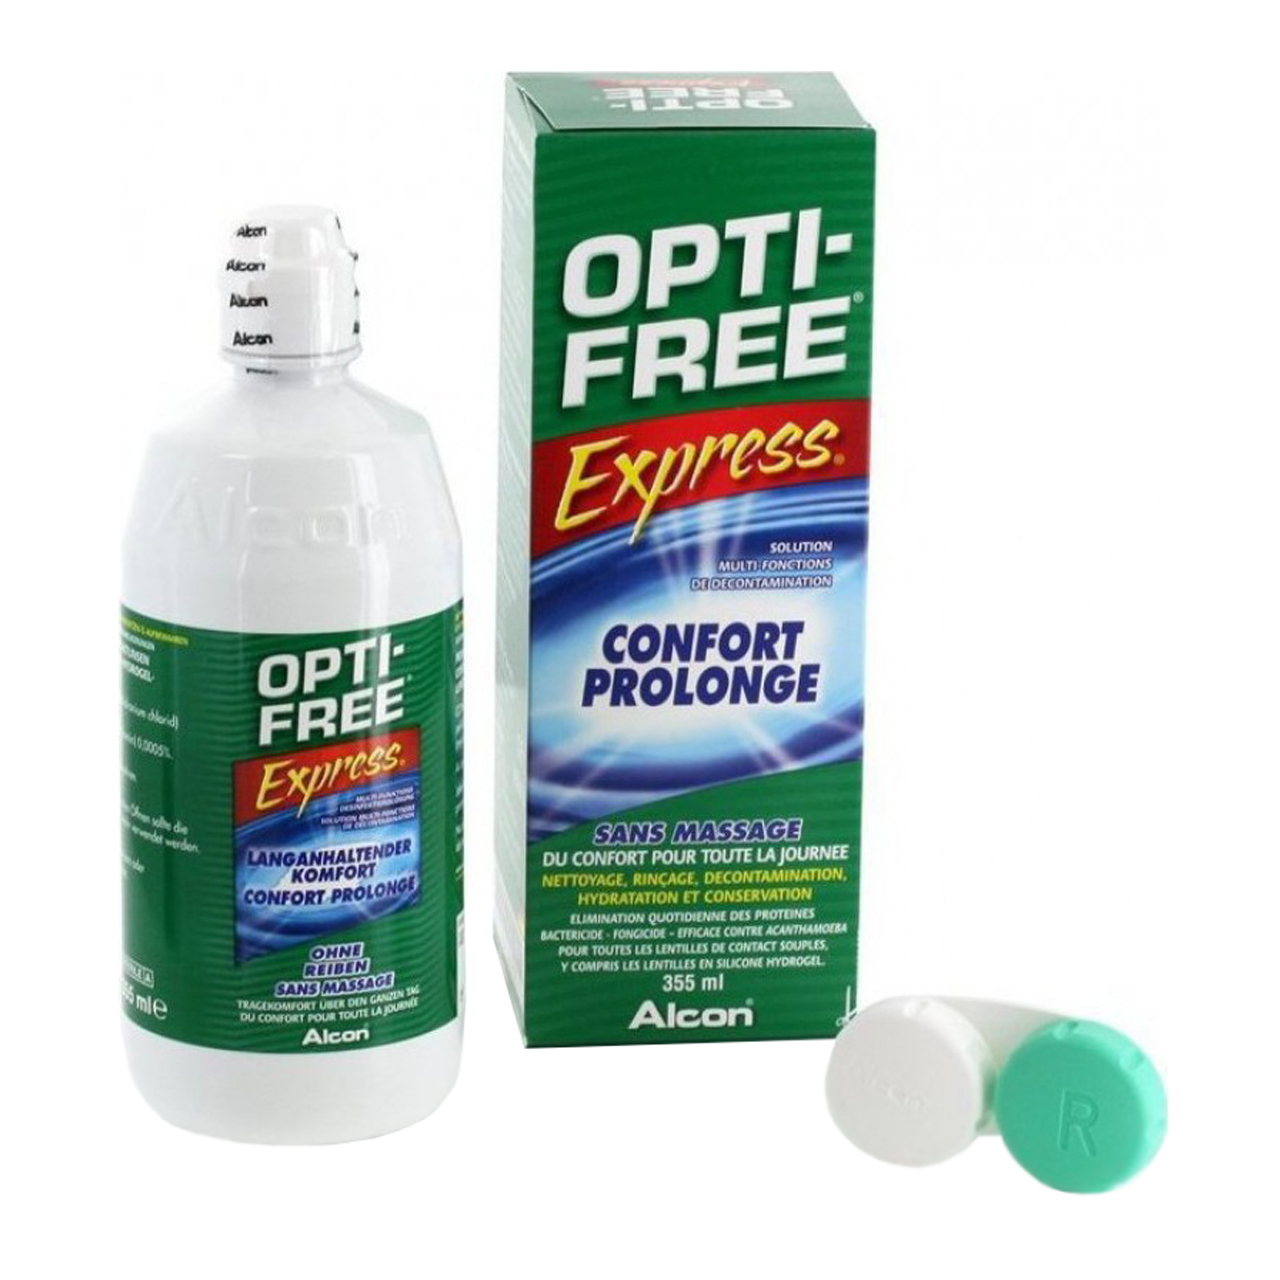 مایع لنز opti-free سایز L